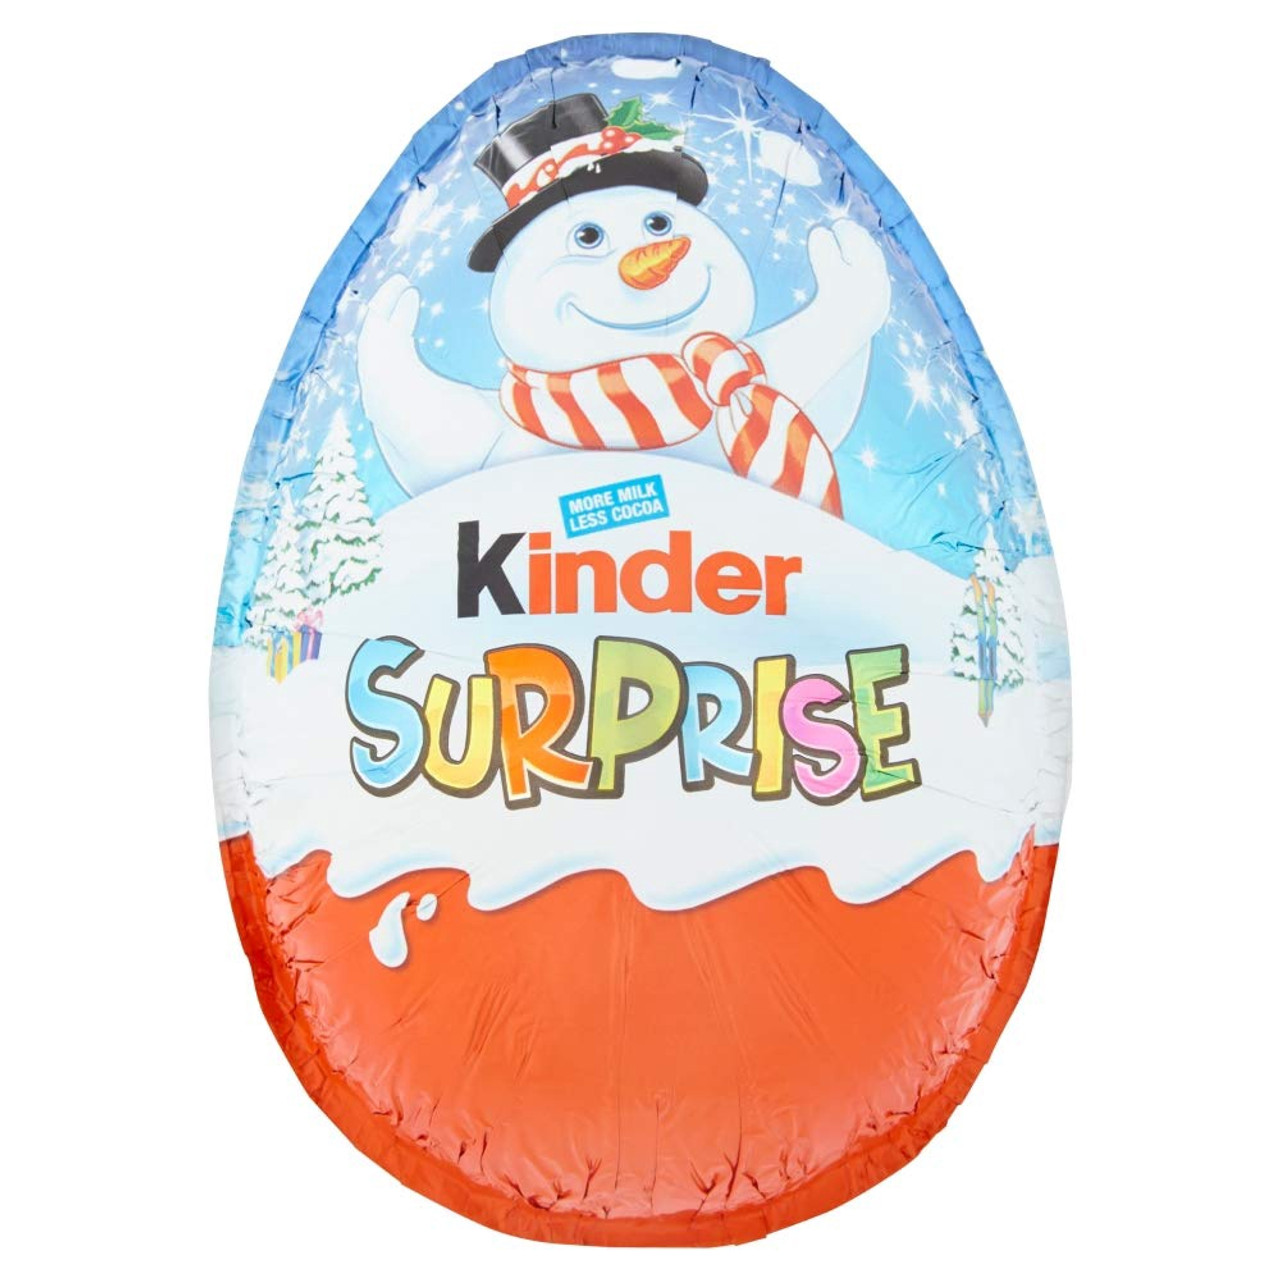 Kinder - Christmas Special - Kinder Surprise Giant Egg for Boys - 220g –  Euro Corner